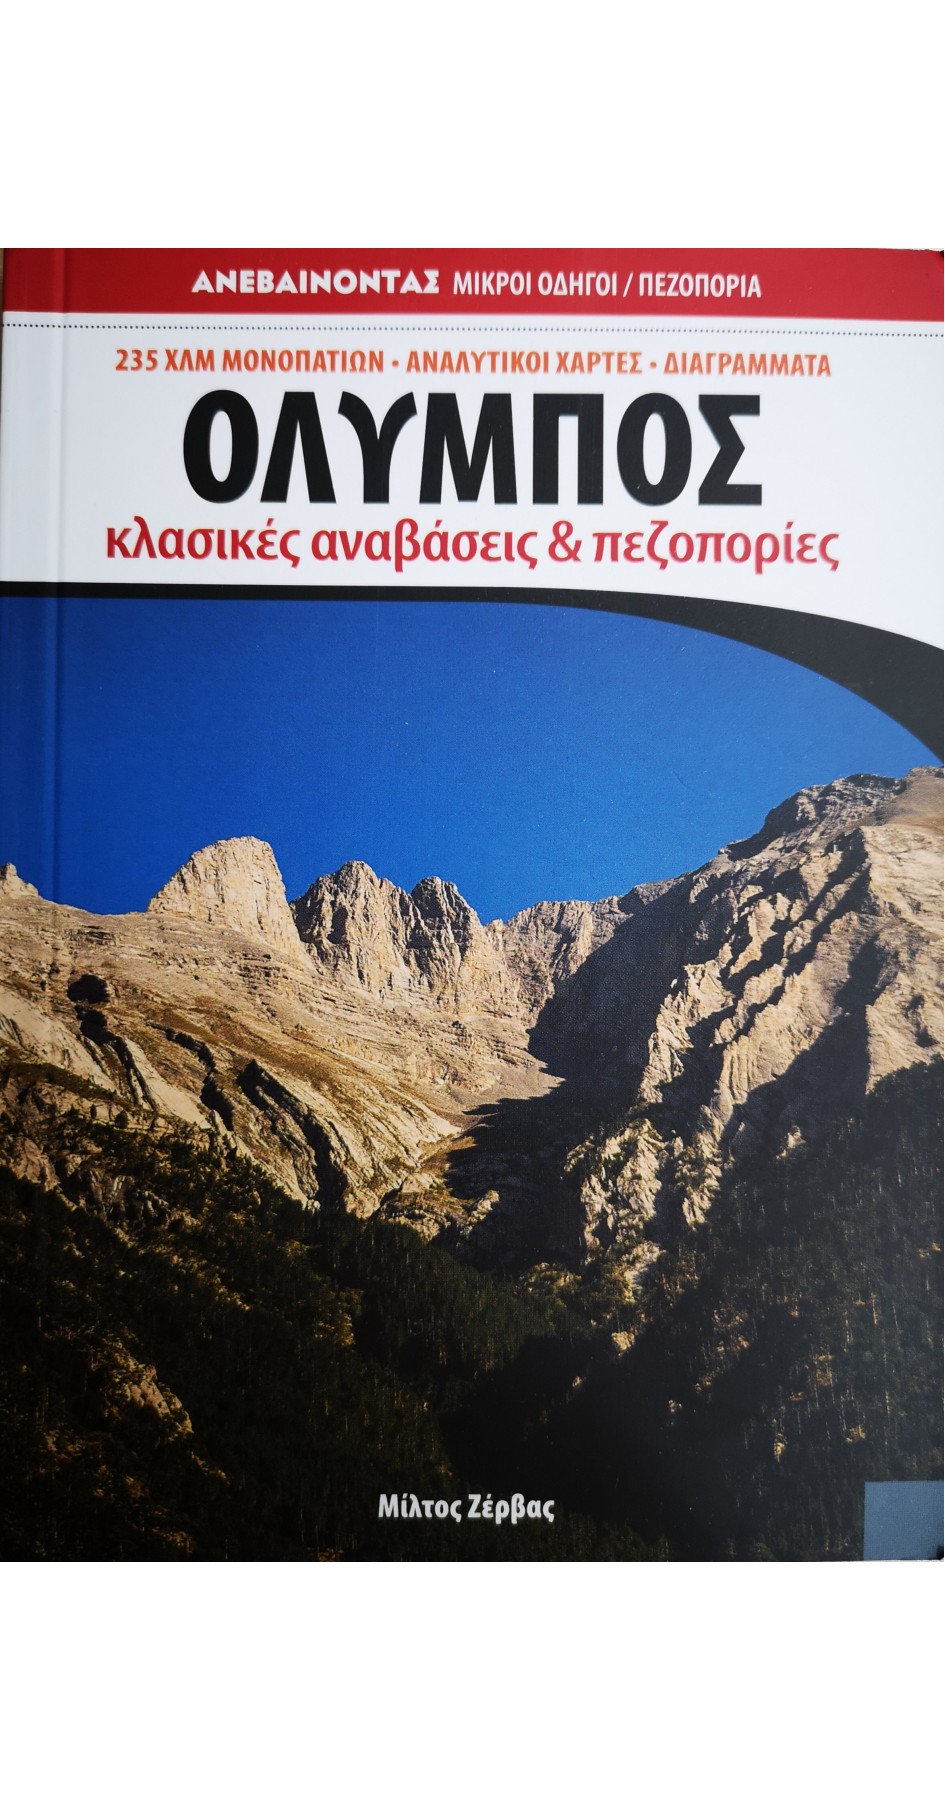 Όλυμπος Κλασικές αναβάσεις και πεζοπορίες  (book in greek)